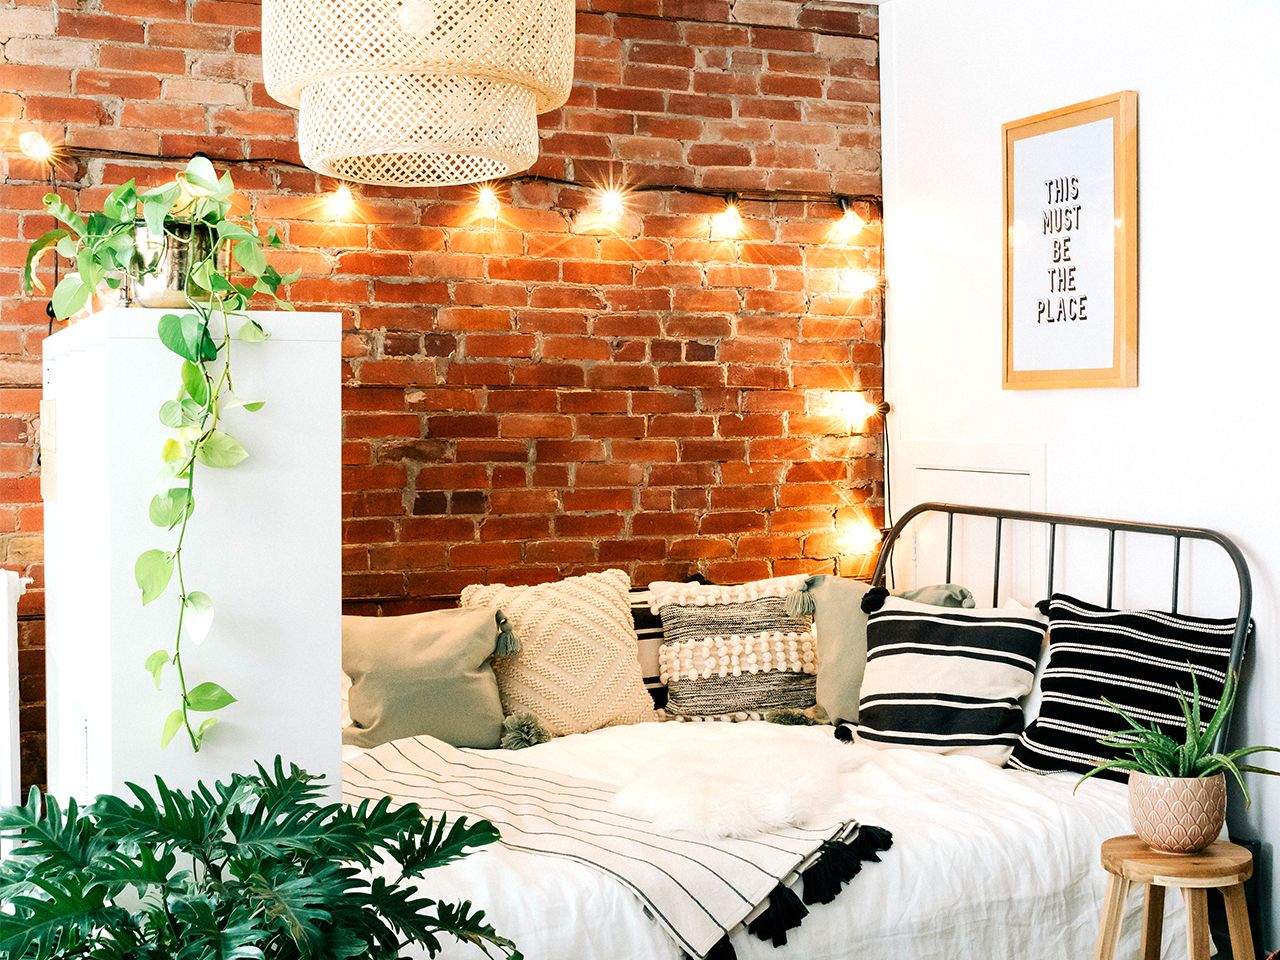 Chuỗi đèn chiếu sáng trên tường gạch cho cái nhìn lung linh, rực rỡ, kết hợp với cây xanh trang trí cân bằng sắc thái cho phòng ngủ này quyến rũ hơn rất nhiều.